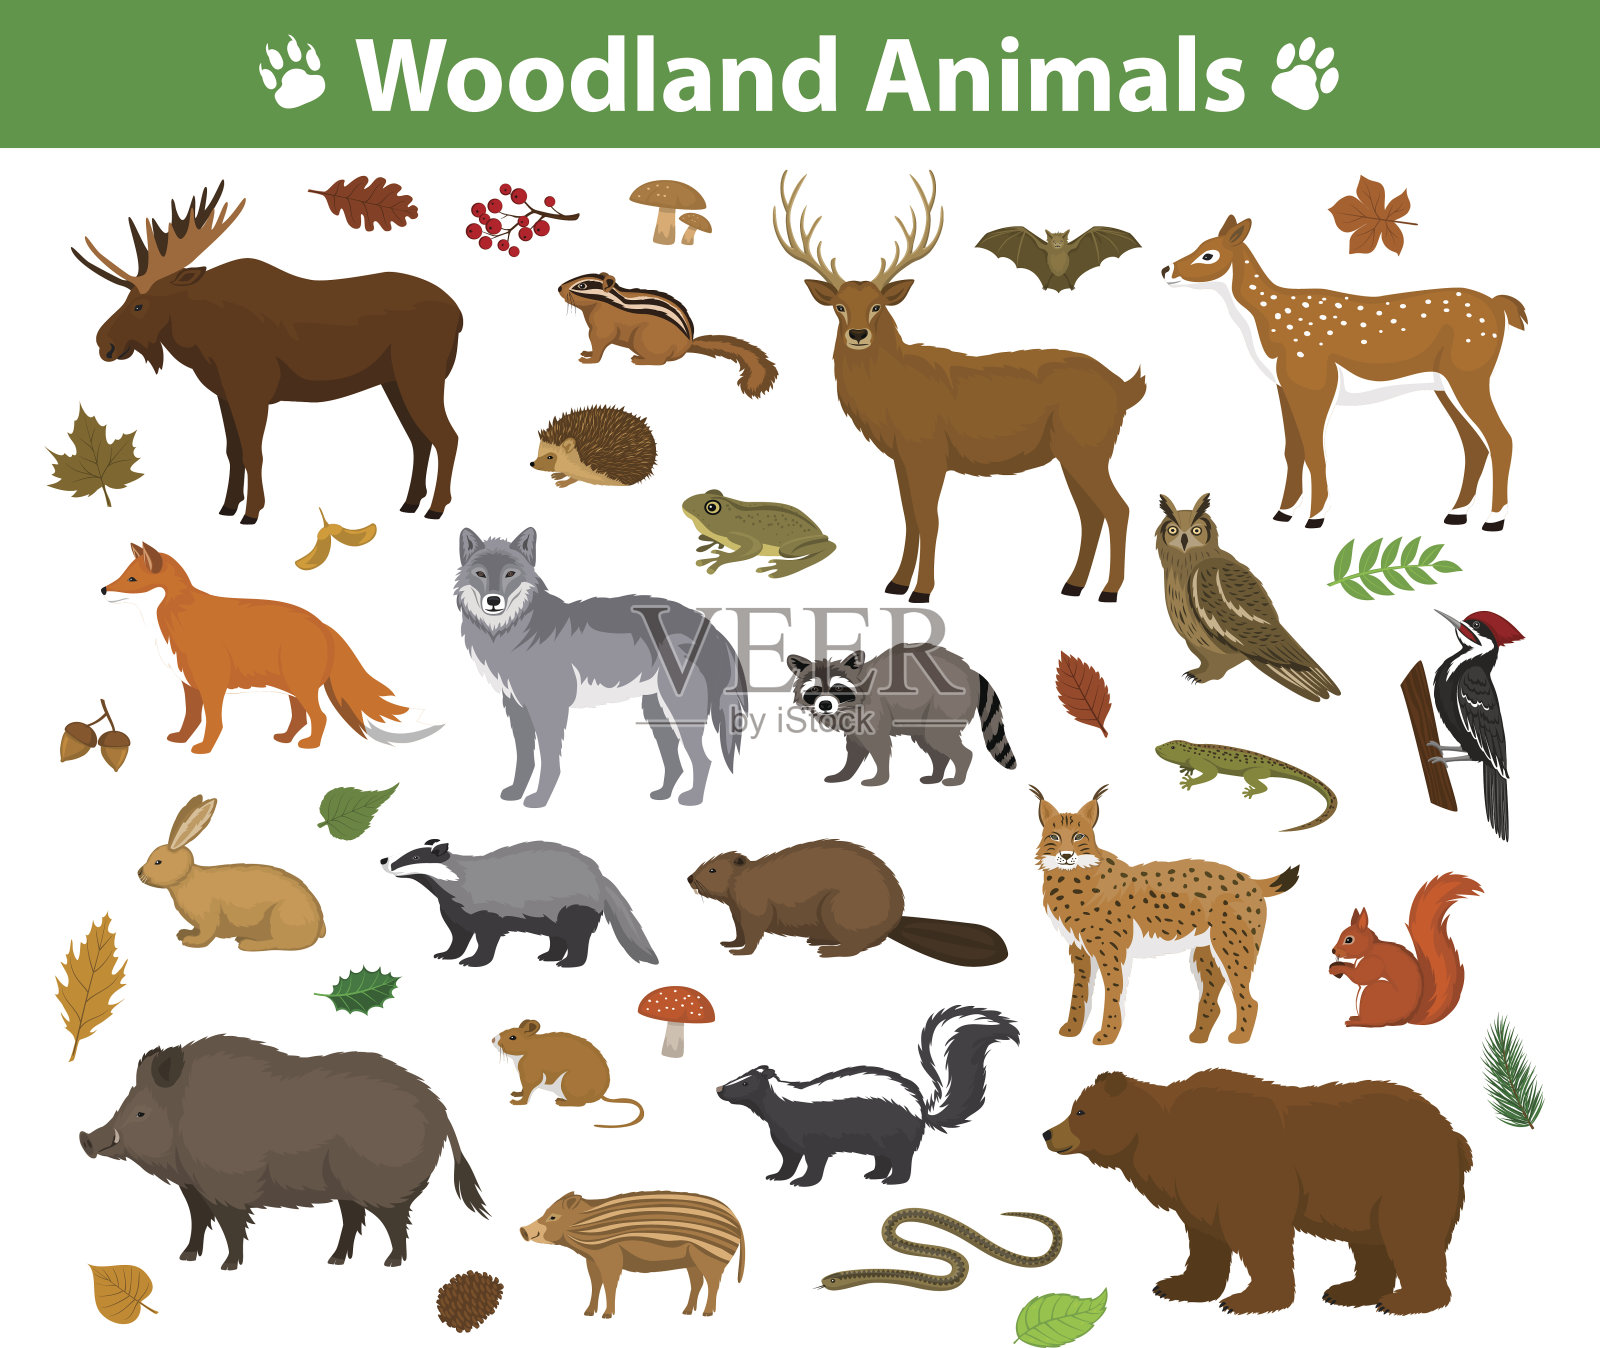 林地森林动物收藏包括鹿、熊、猫头鹰、野猪、猞猁、松鼠、啄木鸟、獾、海狸、臭鼬、刺猬设计元素图片